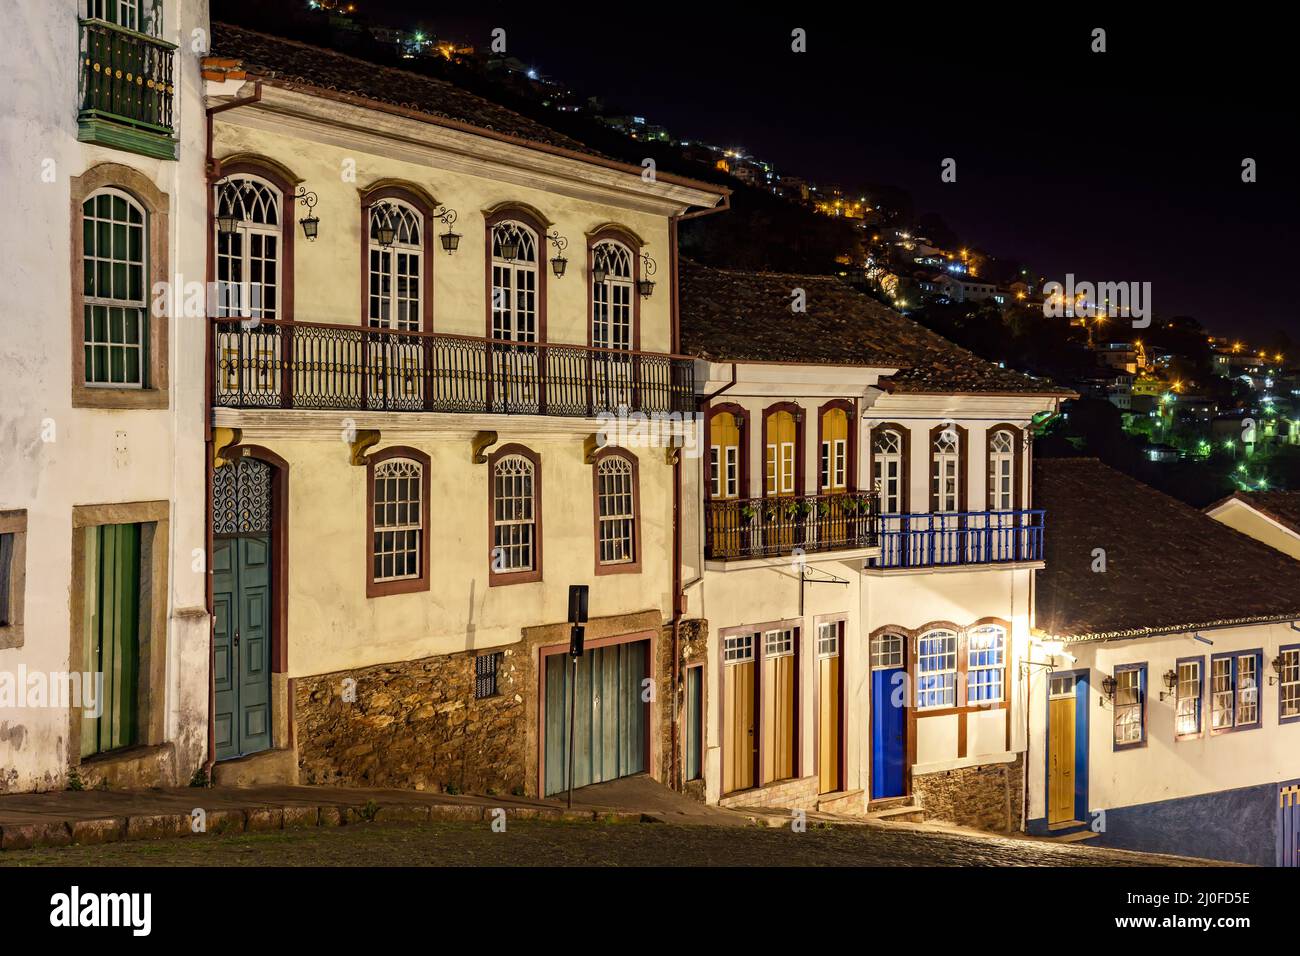 Fassaden von Häusern in Kolonialarchitektur auf einer alten Kopfsteinpflasterstraße, die nachts beleuchtet wird Stockfoto